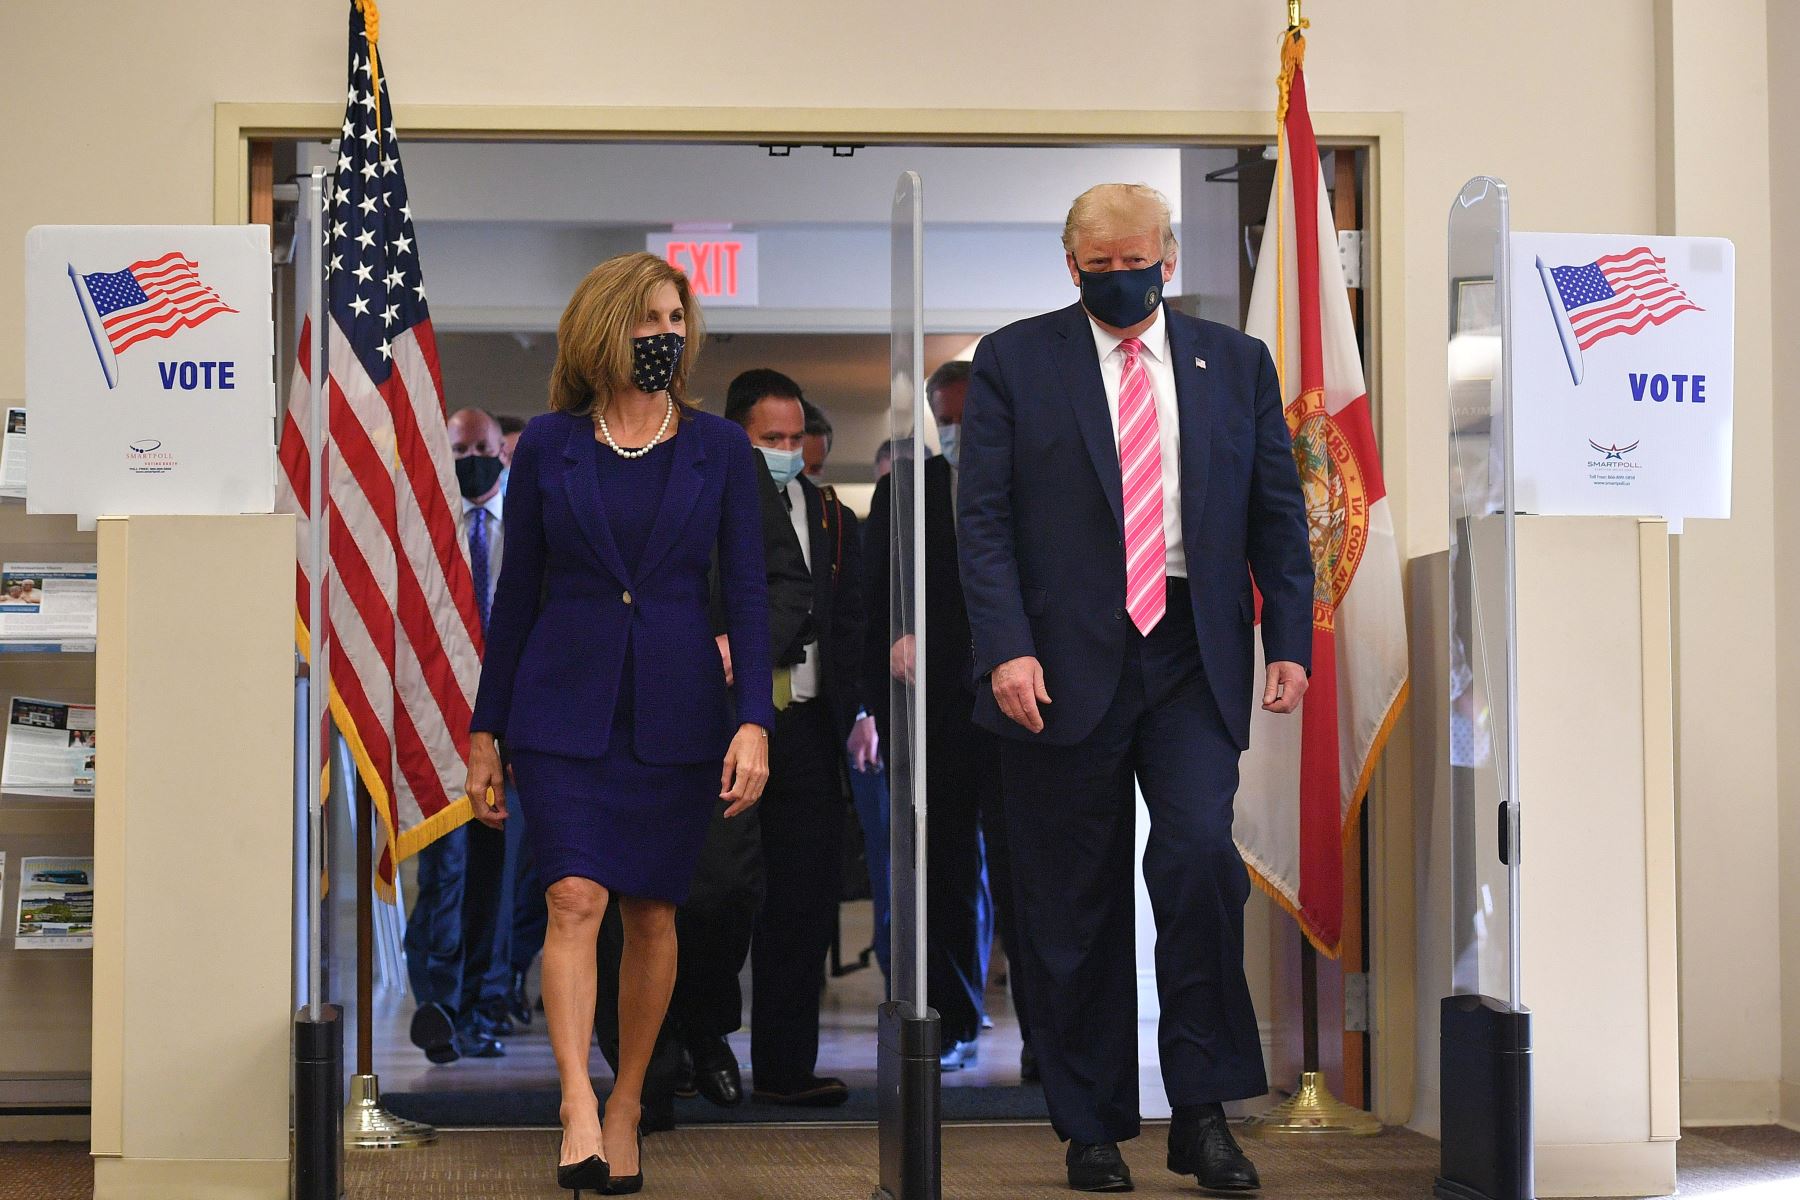 El presidente de los Estados Unidos, Donald Trump, llega al colegio electoral para emitir su voto en la Biblioteca Pública del Condado de Palm Beach, durante la votación anticipada para las elecciones del 3 de noviembre, en West Palm Beach, Florida. Foto: AFP